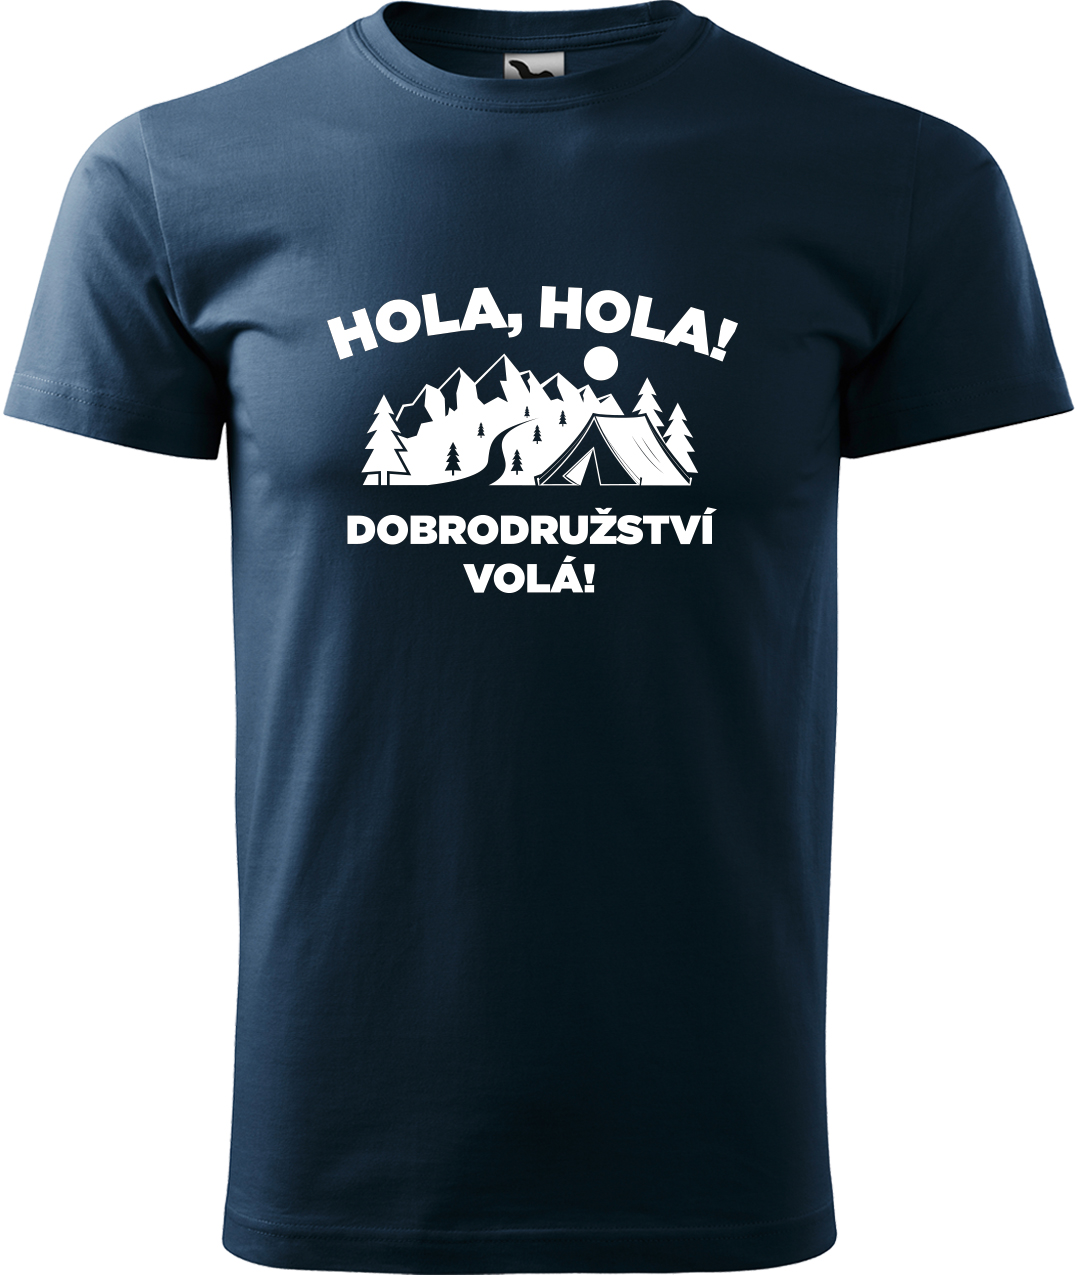 Pánské cestovatelské tričko - Hola hola! Dobrodružství volá! Velikost: S, Barva: Námořní modrá (02), Střih: pánský